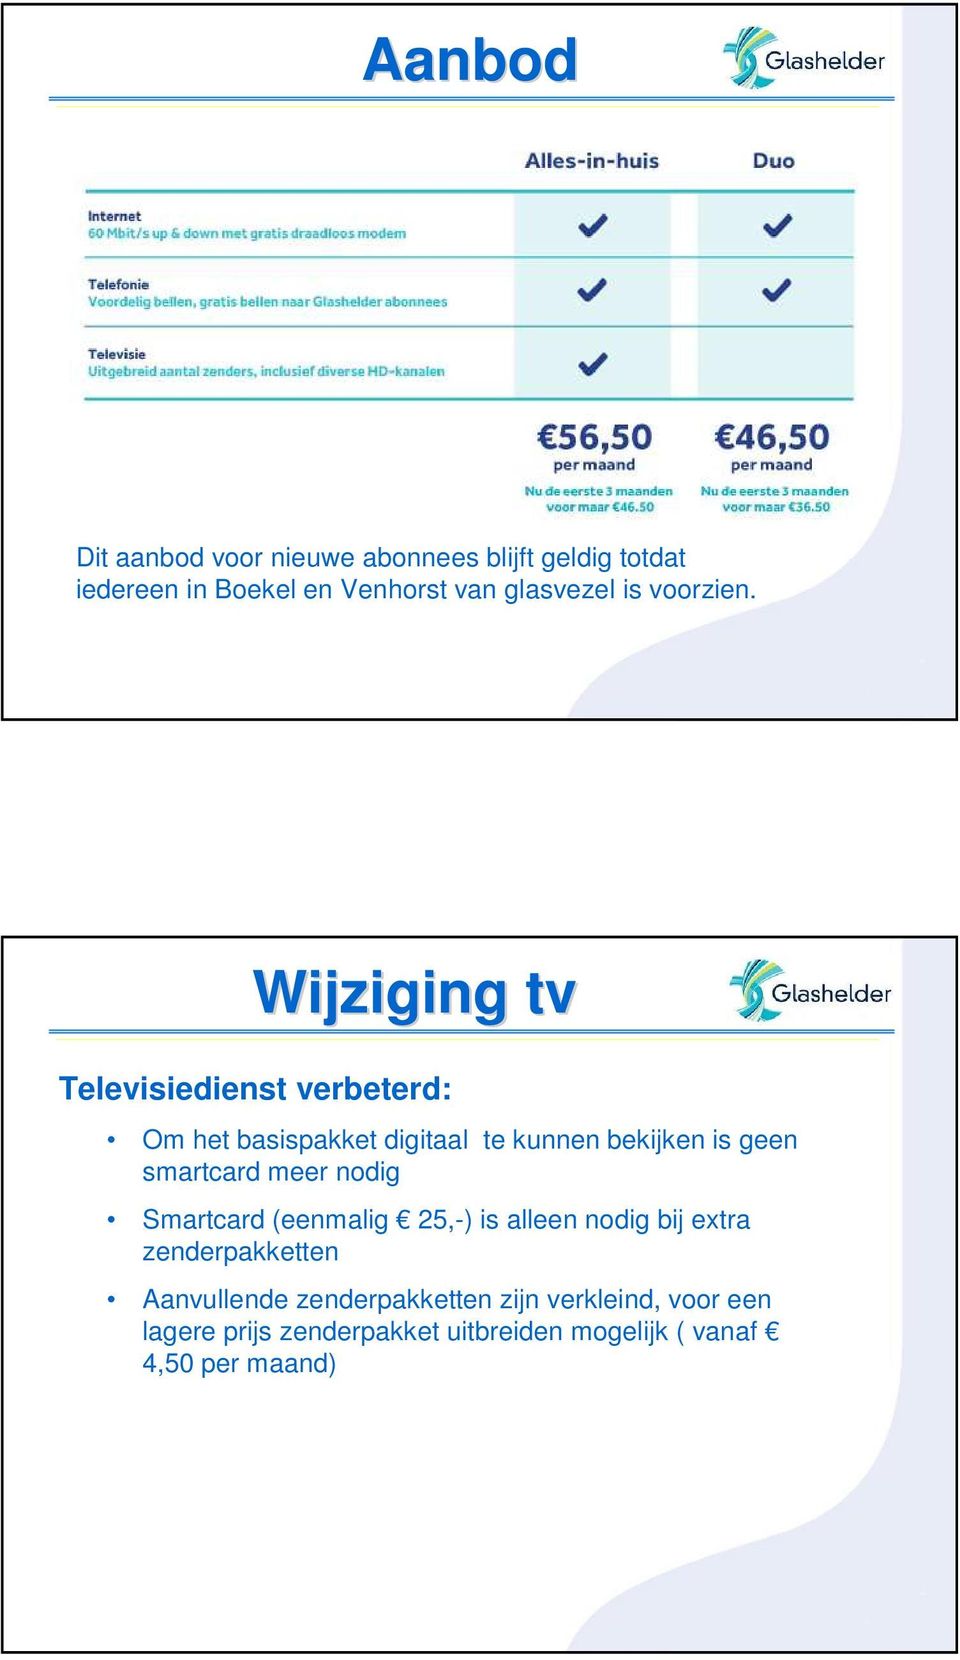 Wijziging tv Televisiedienst verbeterd: Om het basispakket digitaal te kunnen bekijken is geen smartcard